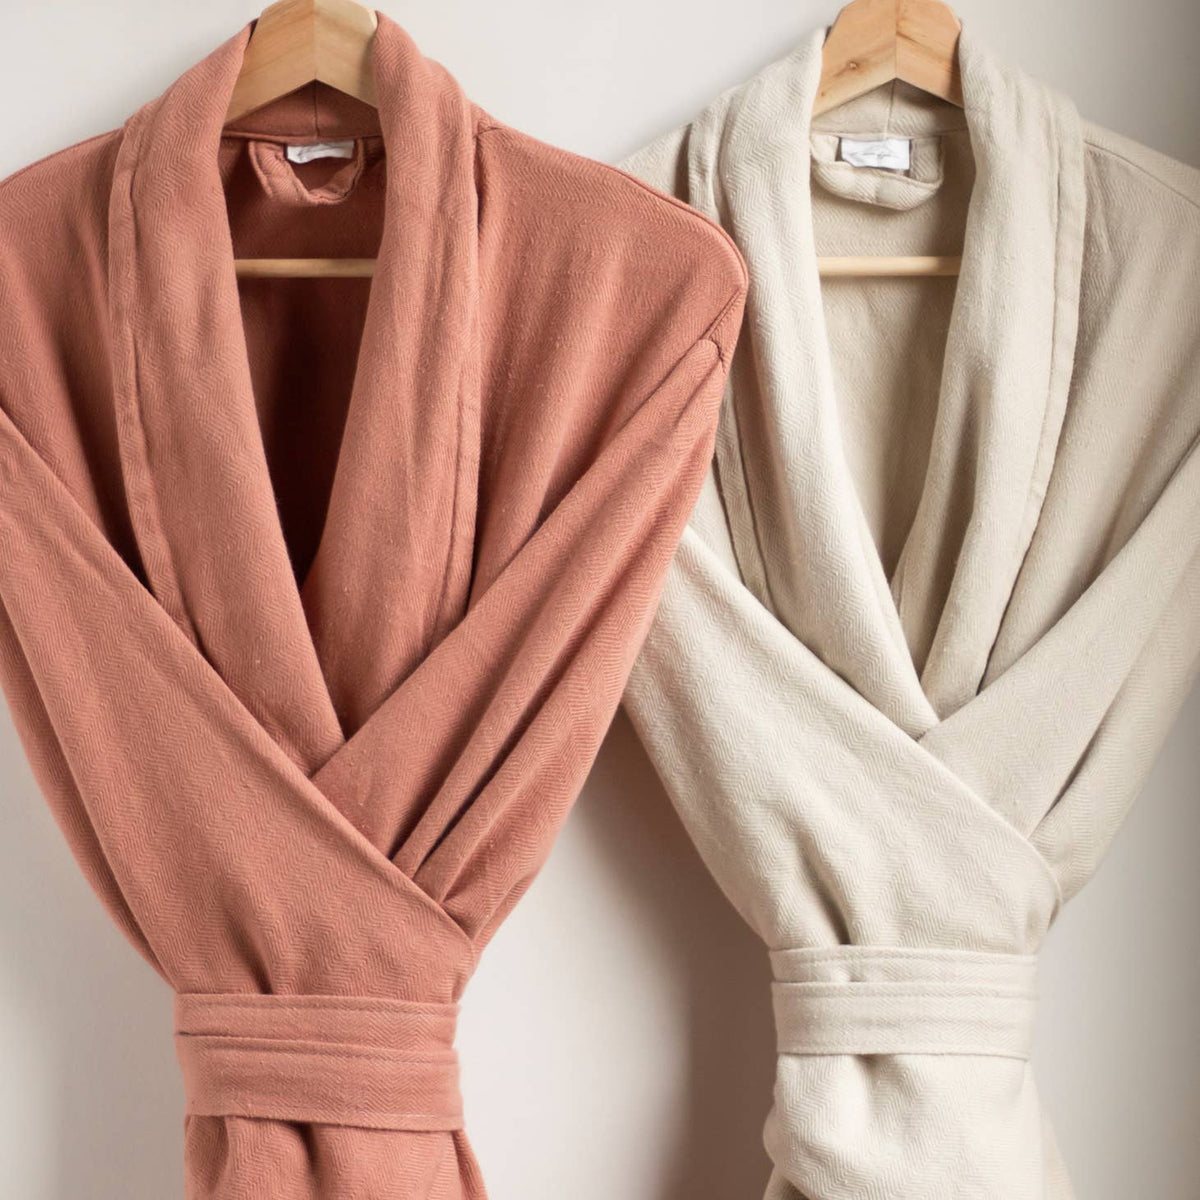 Women's Hooded Full Length Turkish Cotton Bathrobe